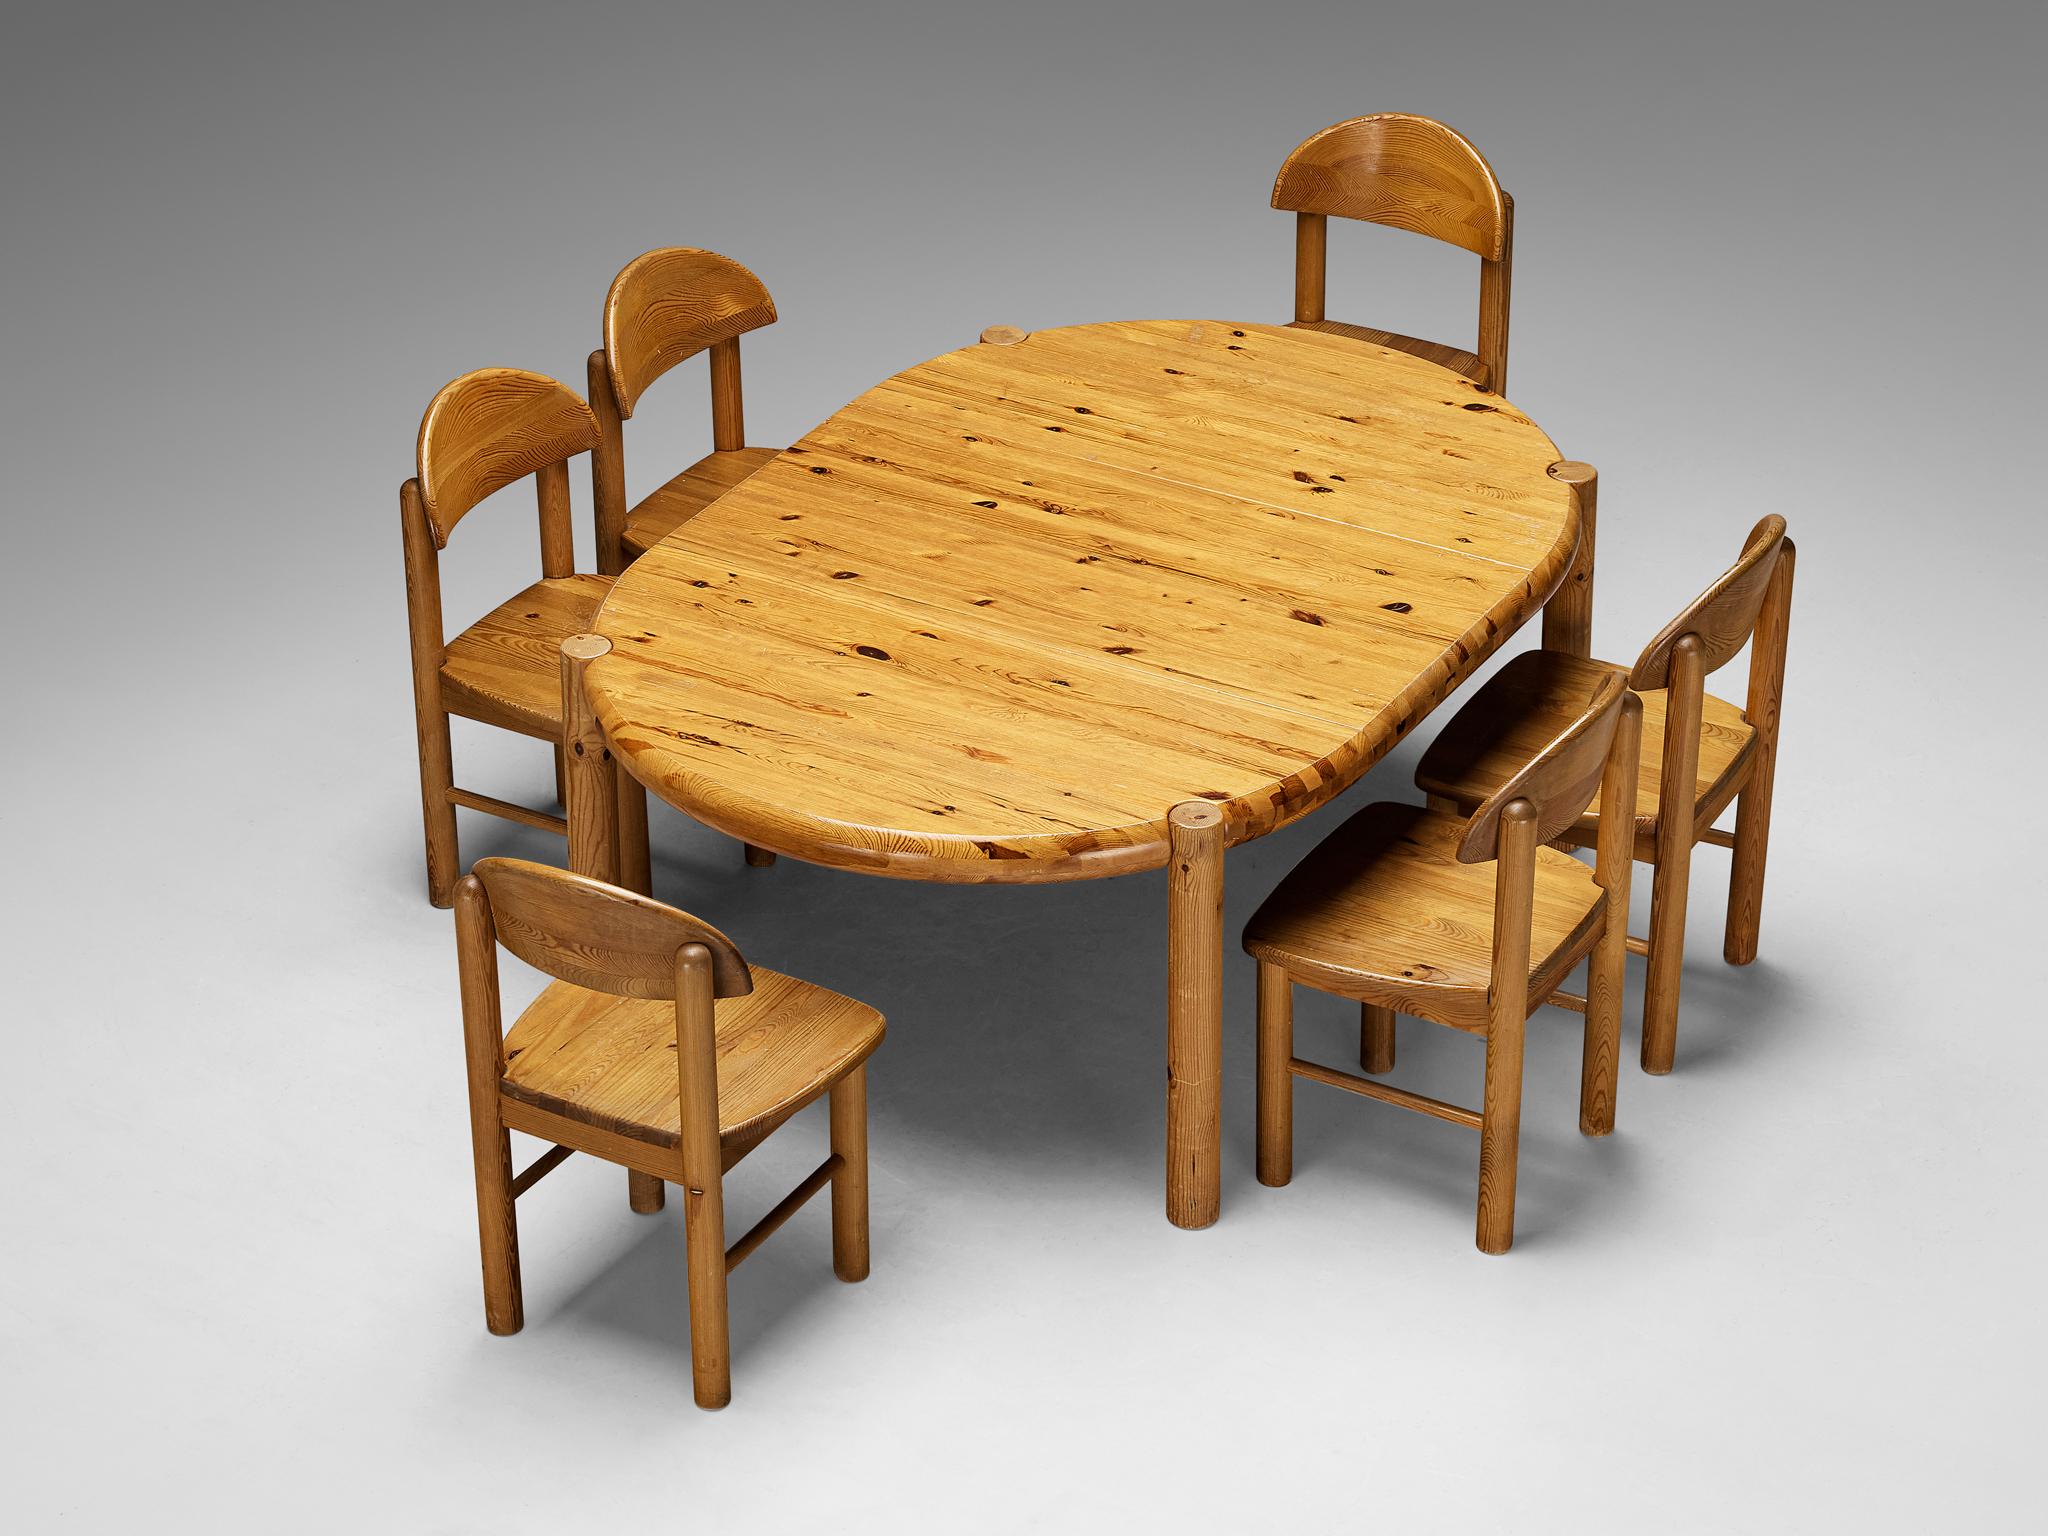 Rainer Daumiller, ensemble de table de salle à manger avec six chaises, pin, Danemark, années 1970.

Cet ensemble de salle à manger comprend une table à manger extensible et six chaises de salle à manger, conçues par Rainer Daumiller. La table peut